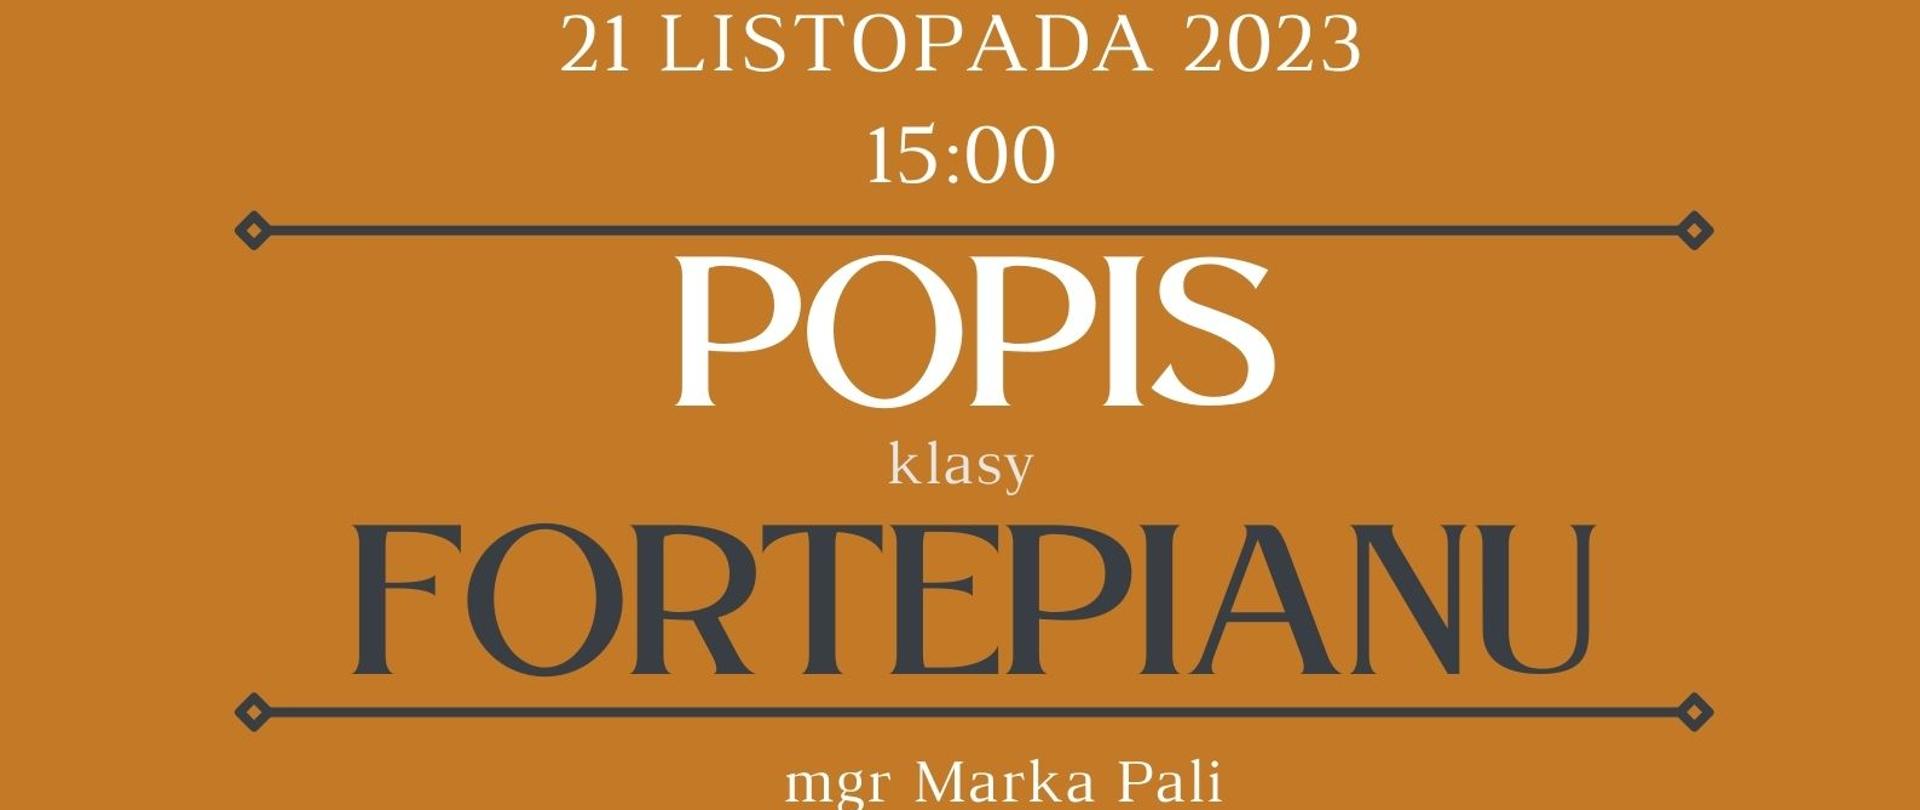 Plakat informujący o popisie klasy fortepianu mgr Marka Pali odbywający się w dniu 21.11.2023 r. o godz. 15.00.